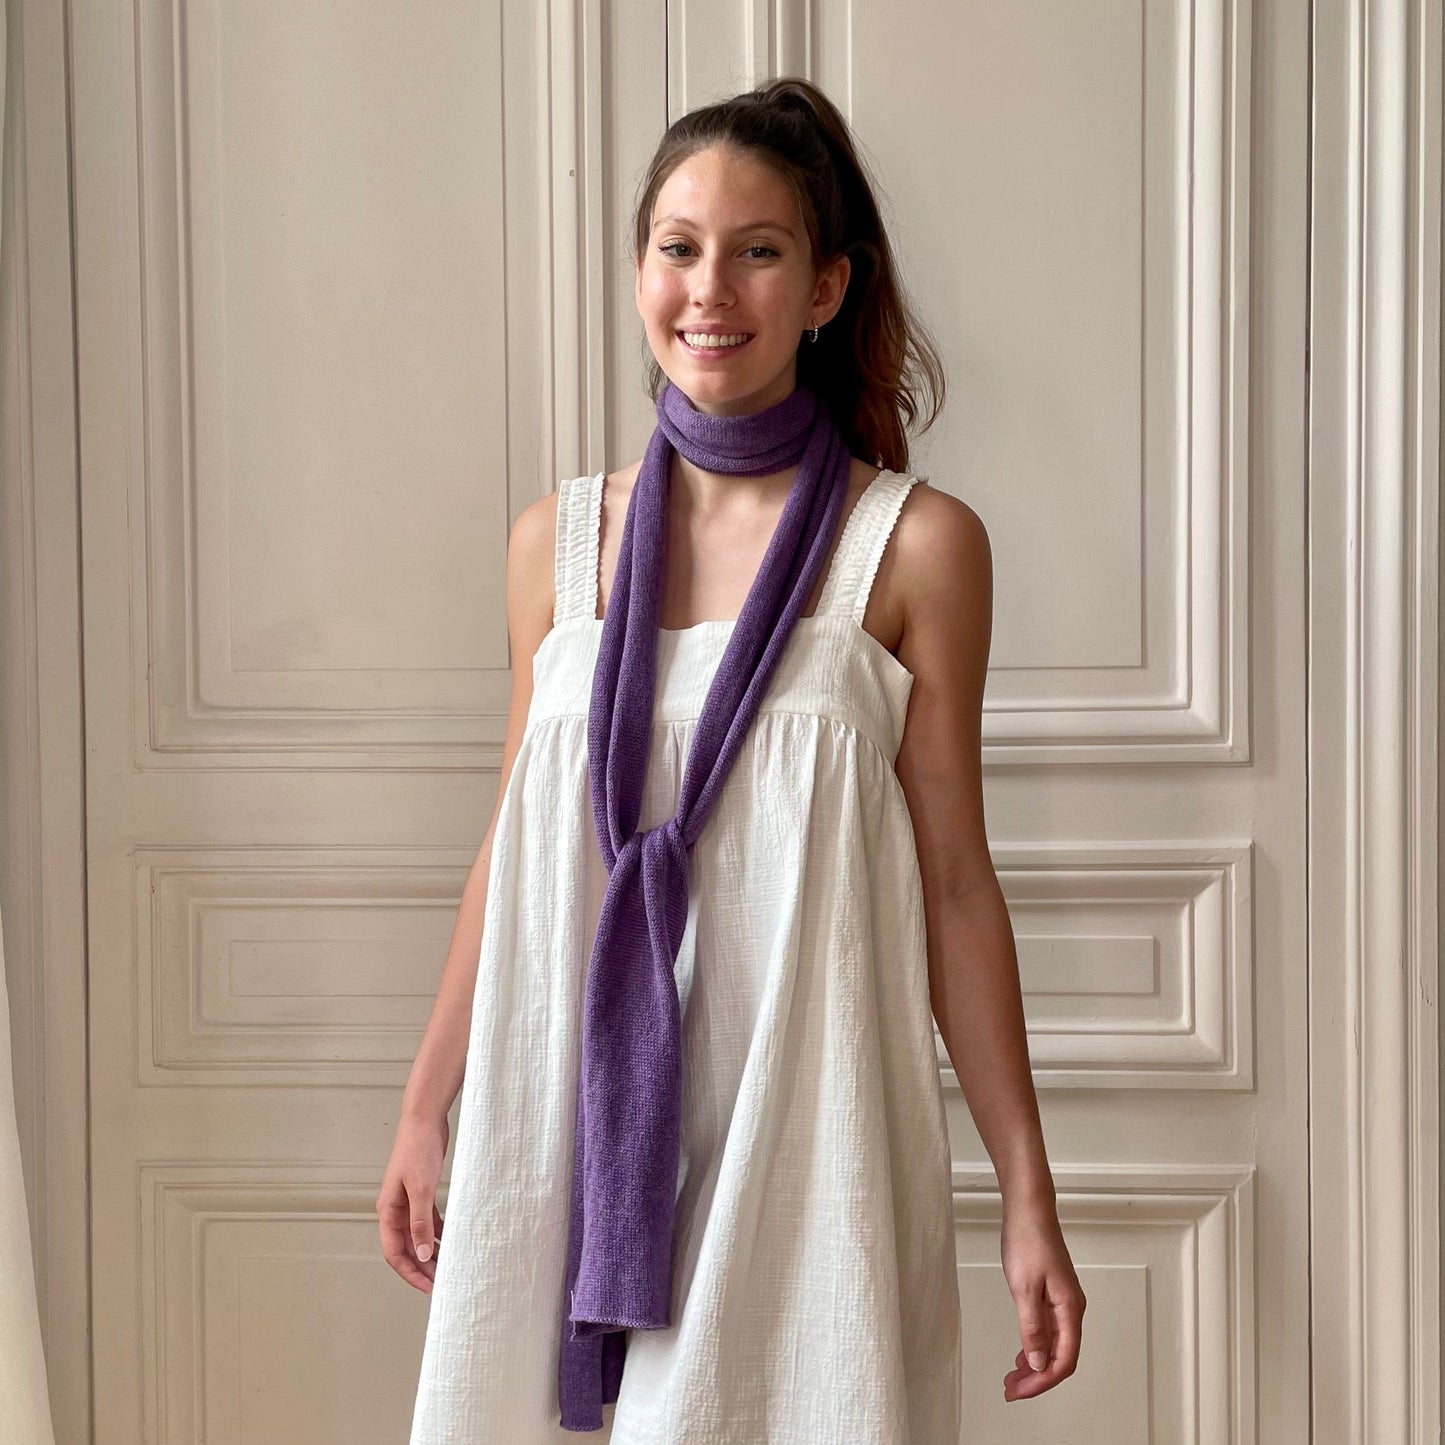 Mini écharpe violette tricotée en France 58% cachemire 42% lin